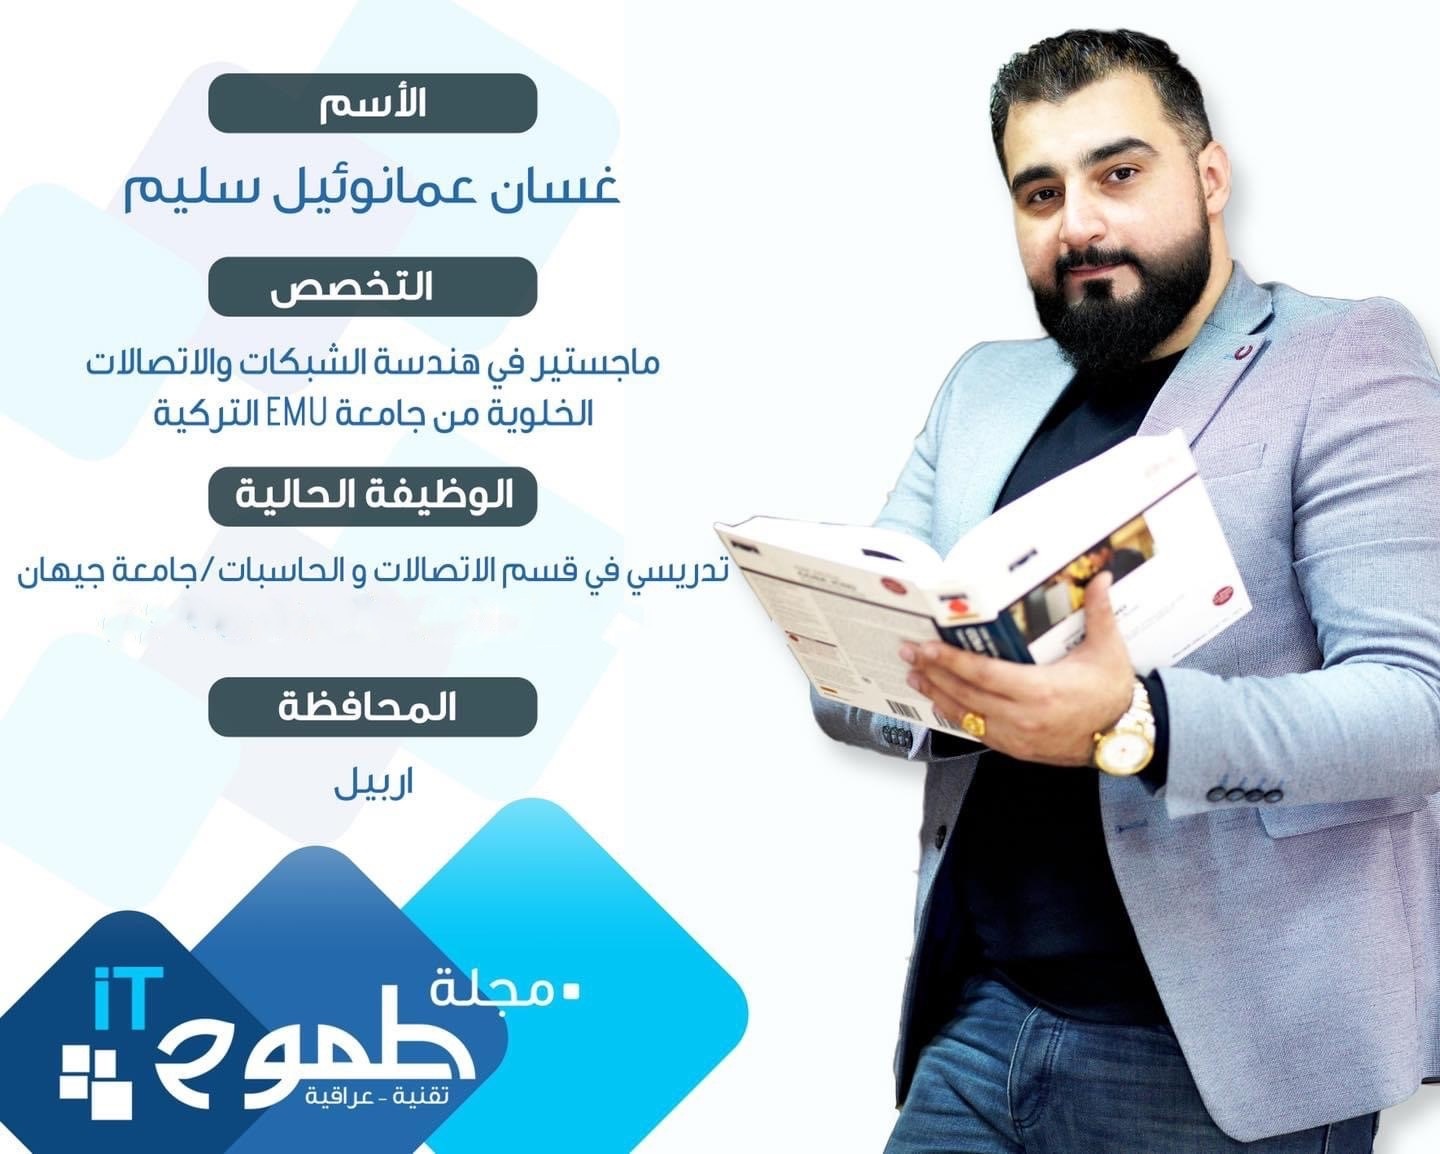 اختيار تدريسي في جامعة جيهان – اربيل كشخصية مؤثرة في مجلة الطموح العراقية لتقنيات المعلومات